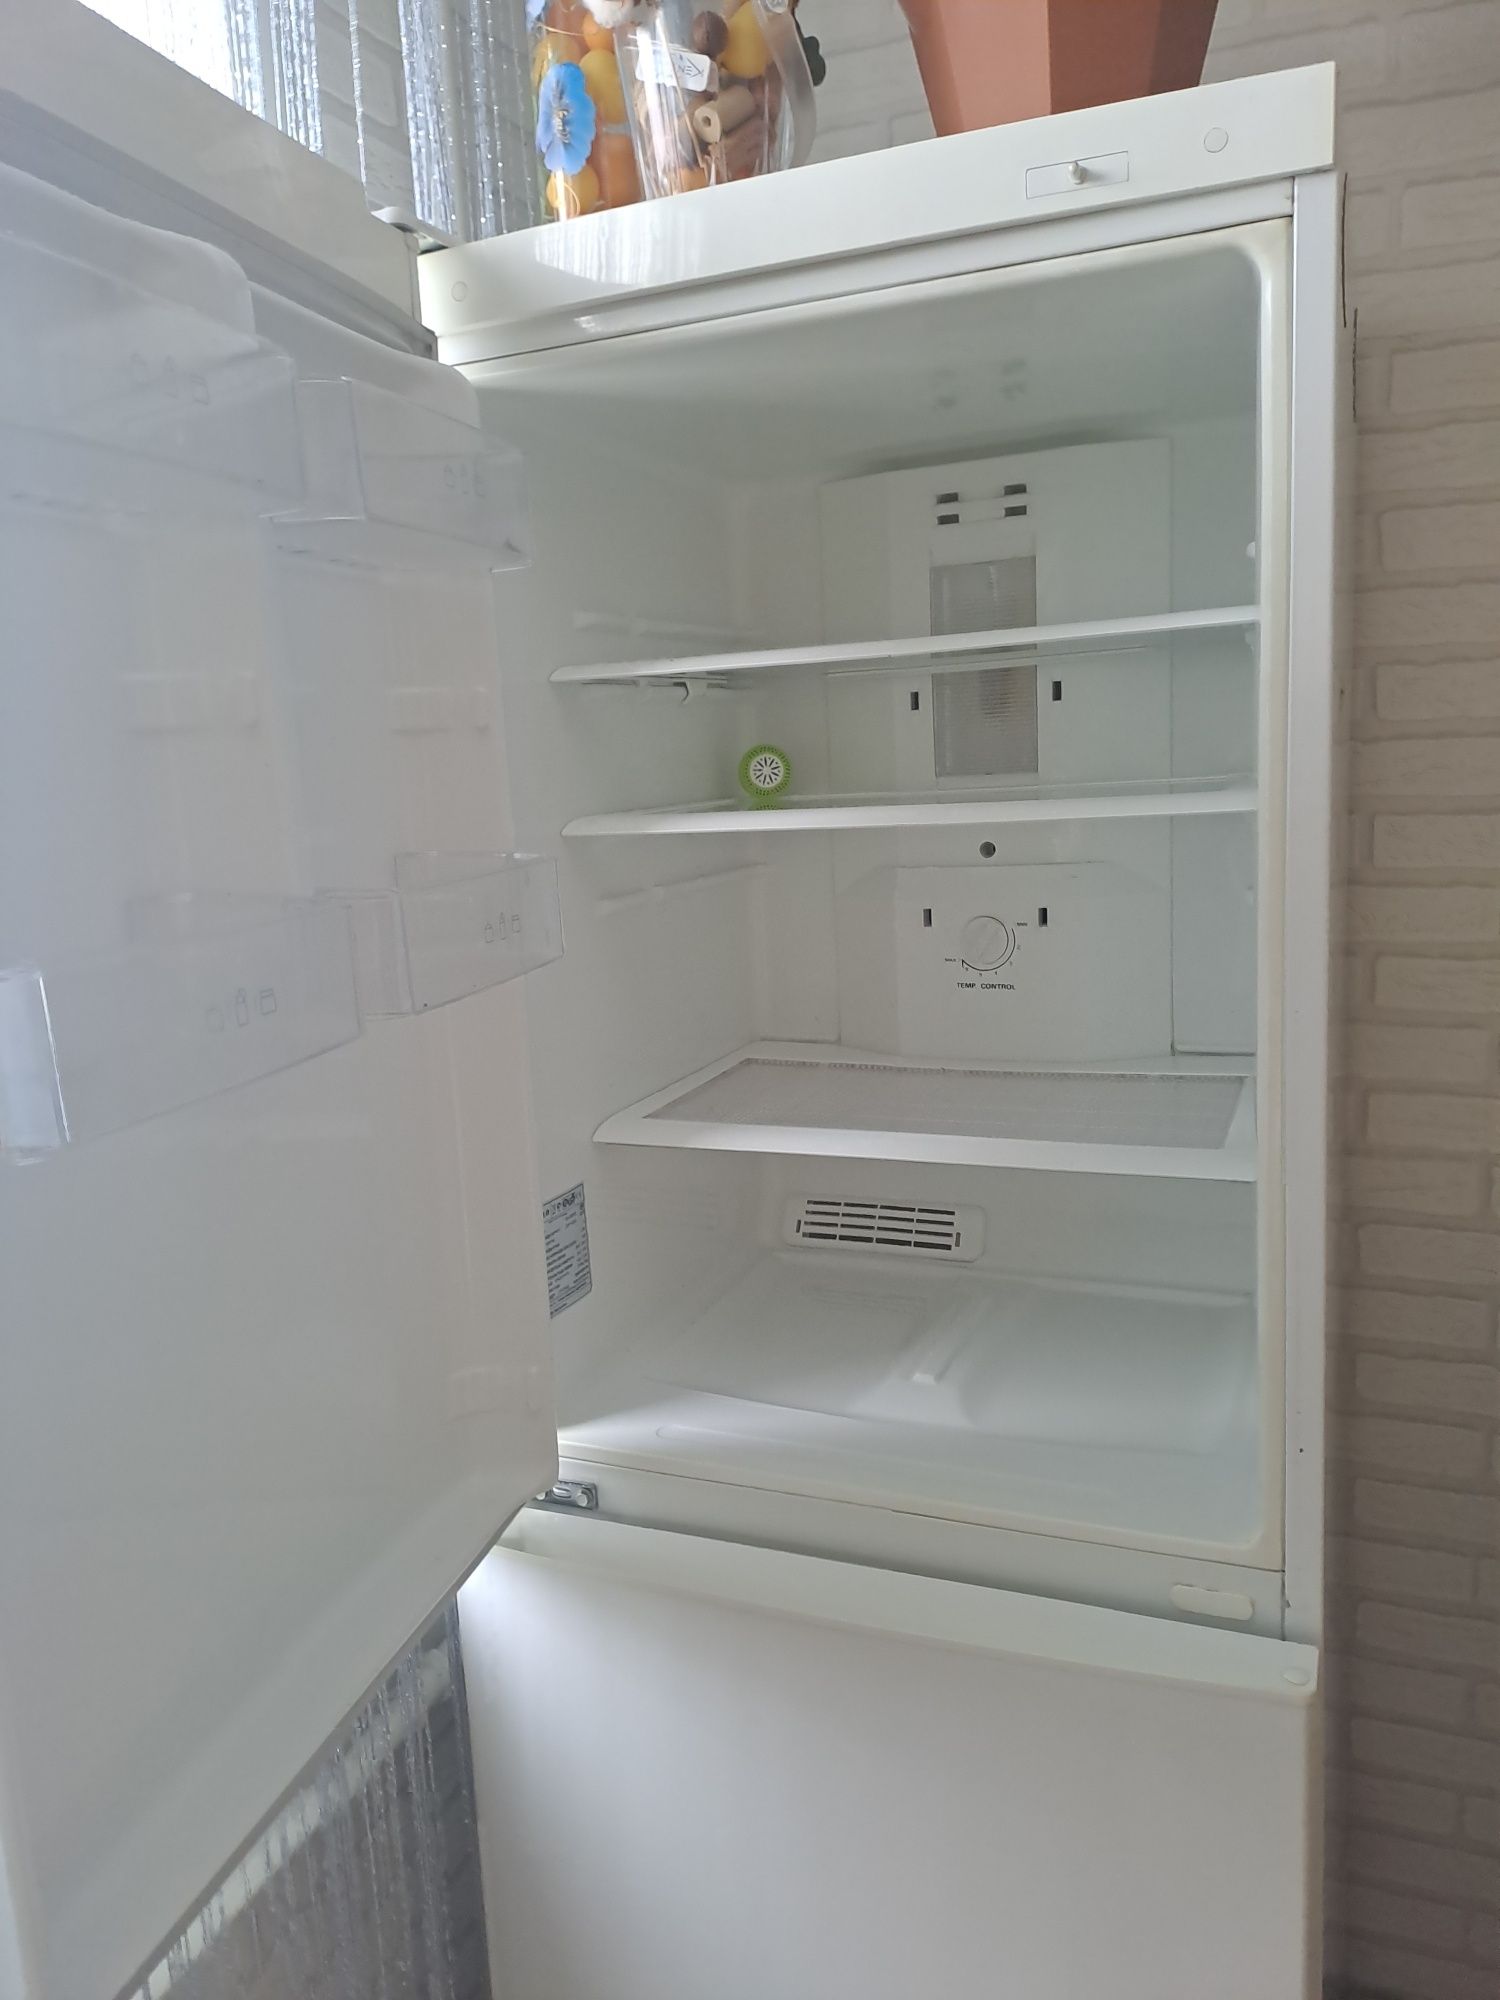 Продам холодильник требует ремонта